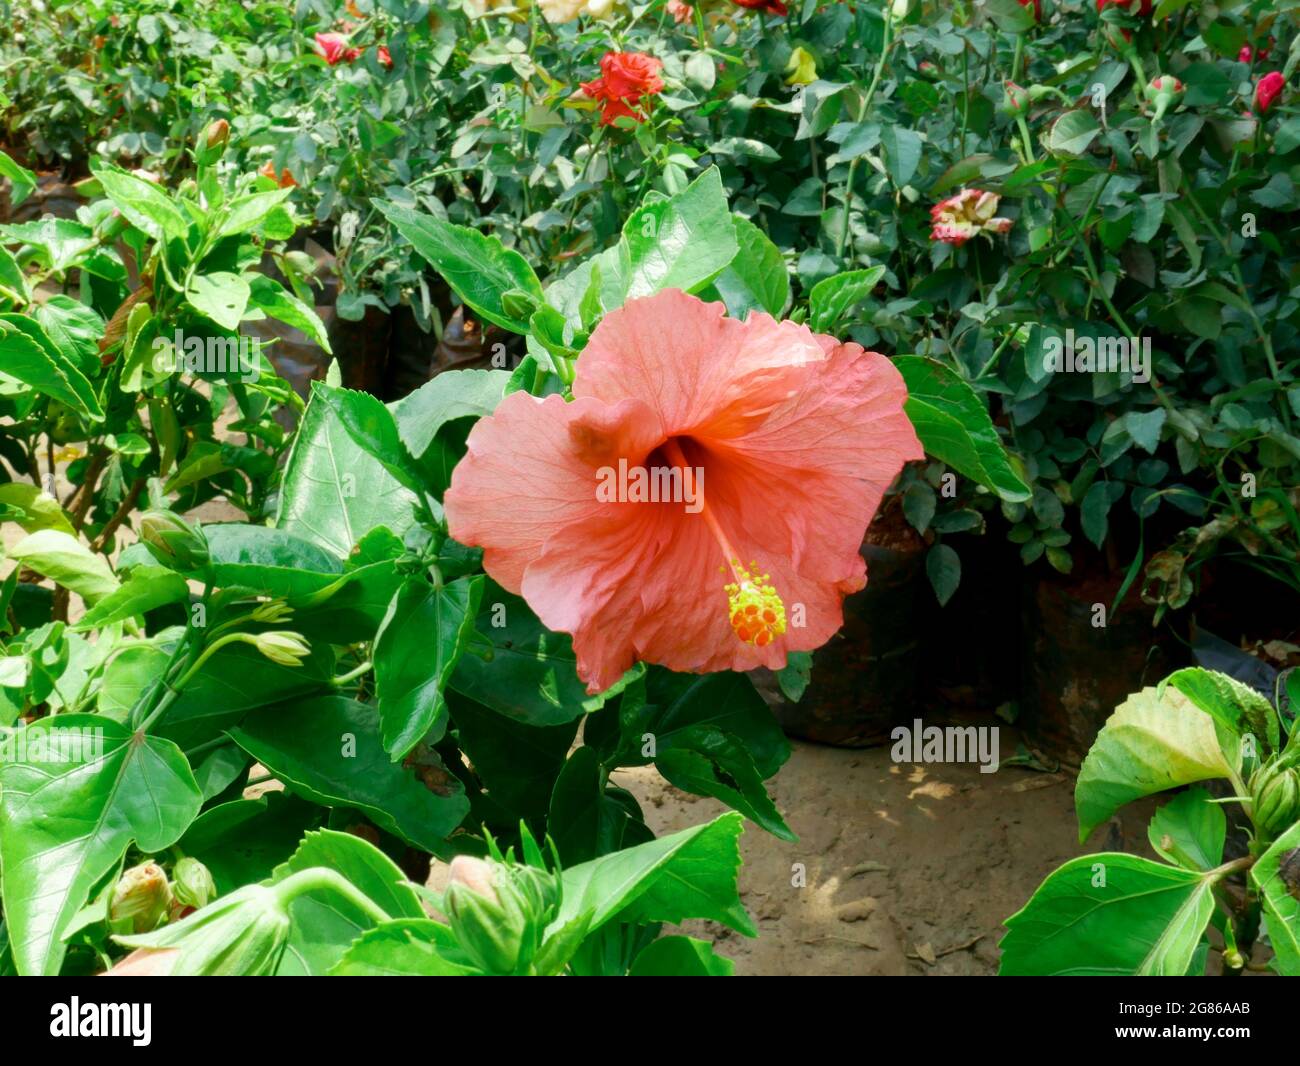 Hibiscus couleur orange fleur de gros plan tourné au jardin indien, nature beauté image pour un usage commercial. Banque D'Images